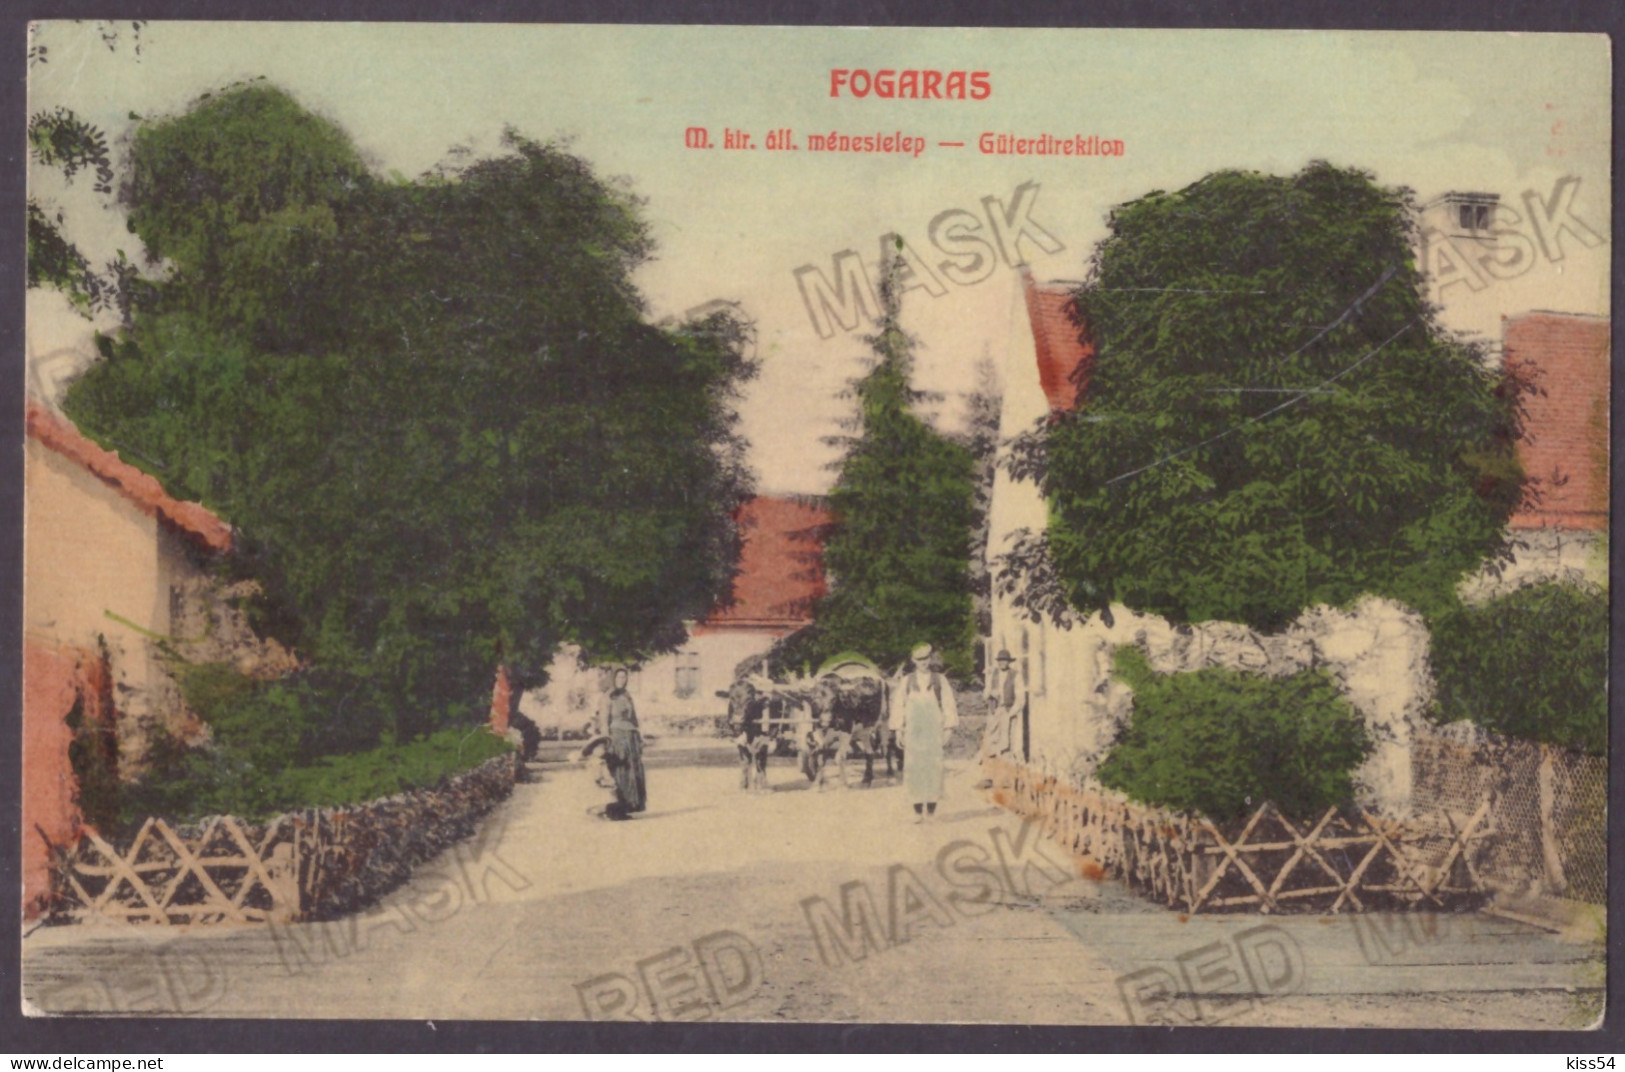 RO 40 - 23116 FAGARAS, Brasov, Romania - Old Postcard - Unused - Romania